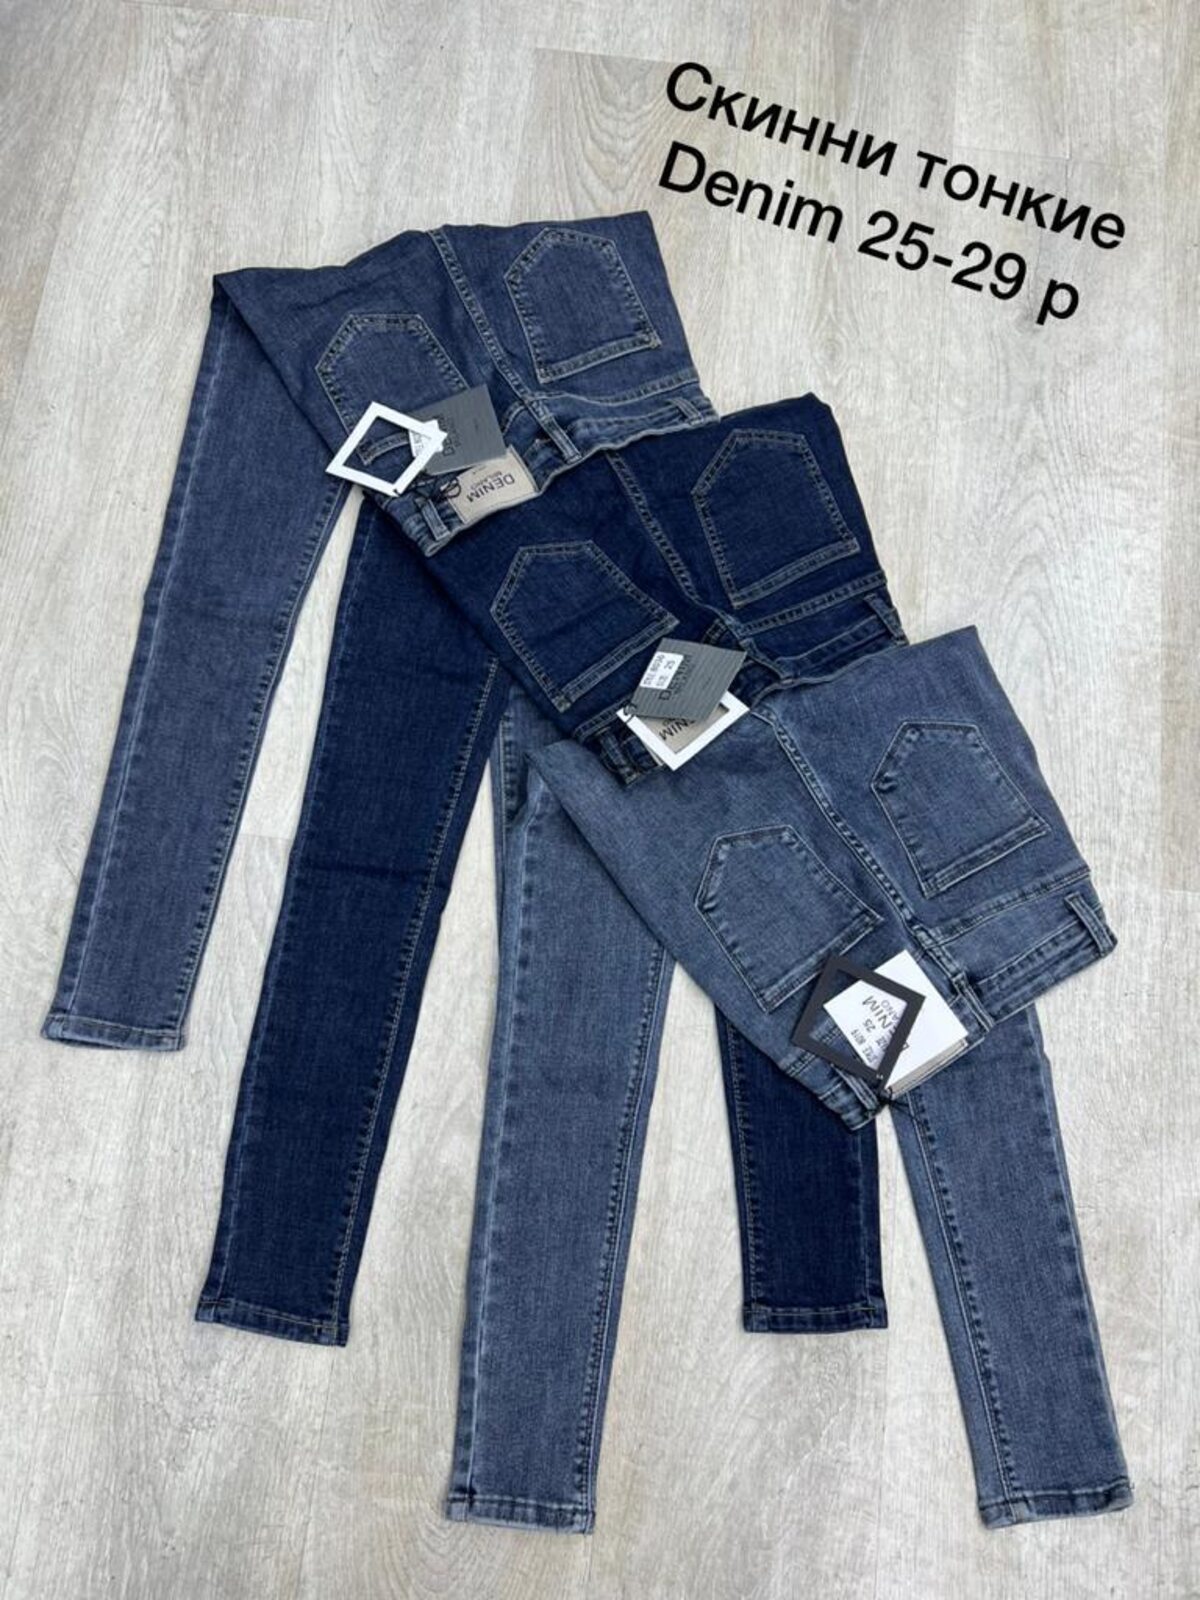 Джинсы, джинсы арт.453323